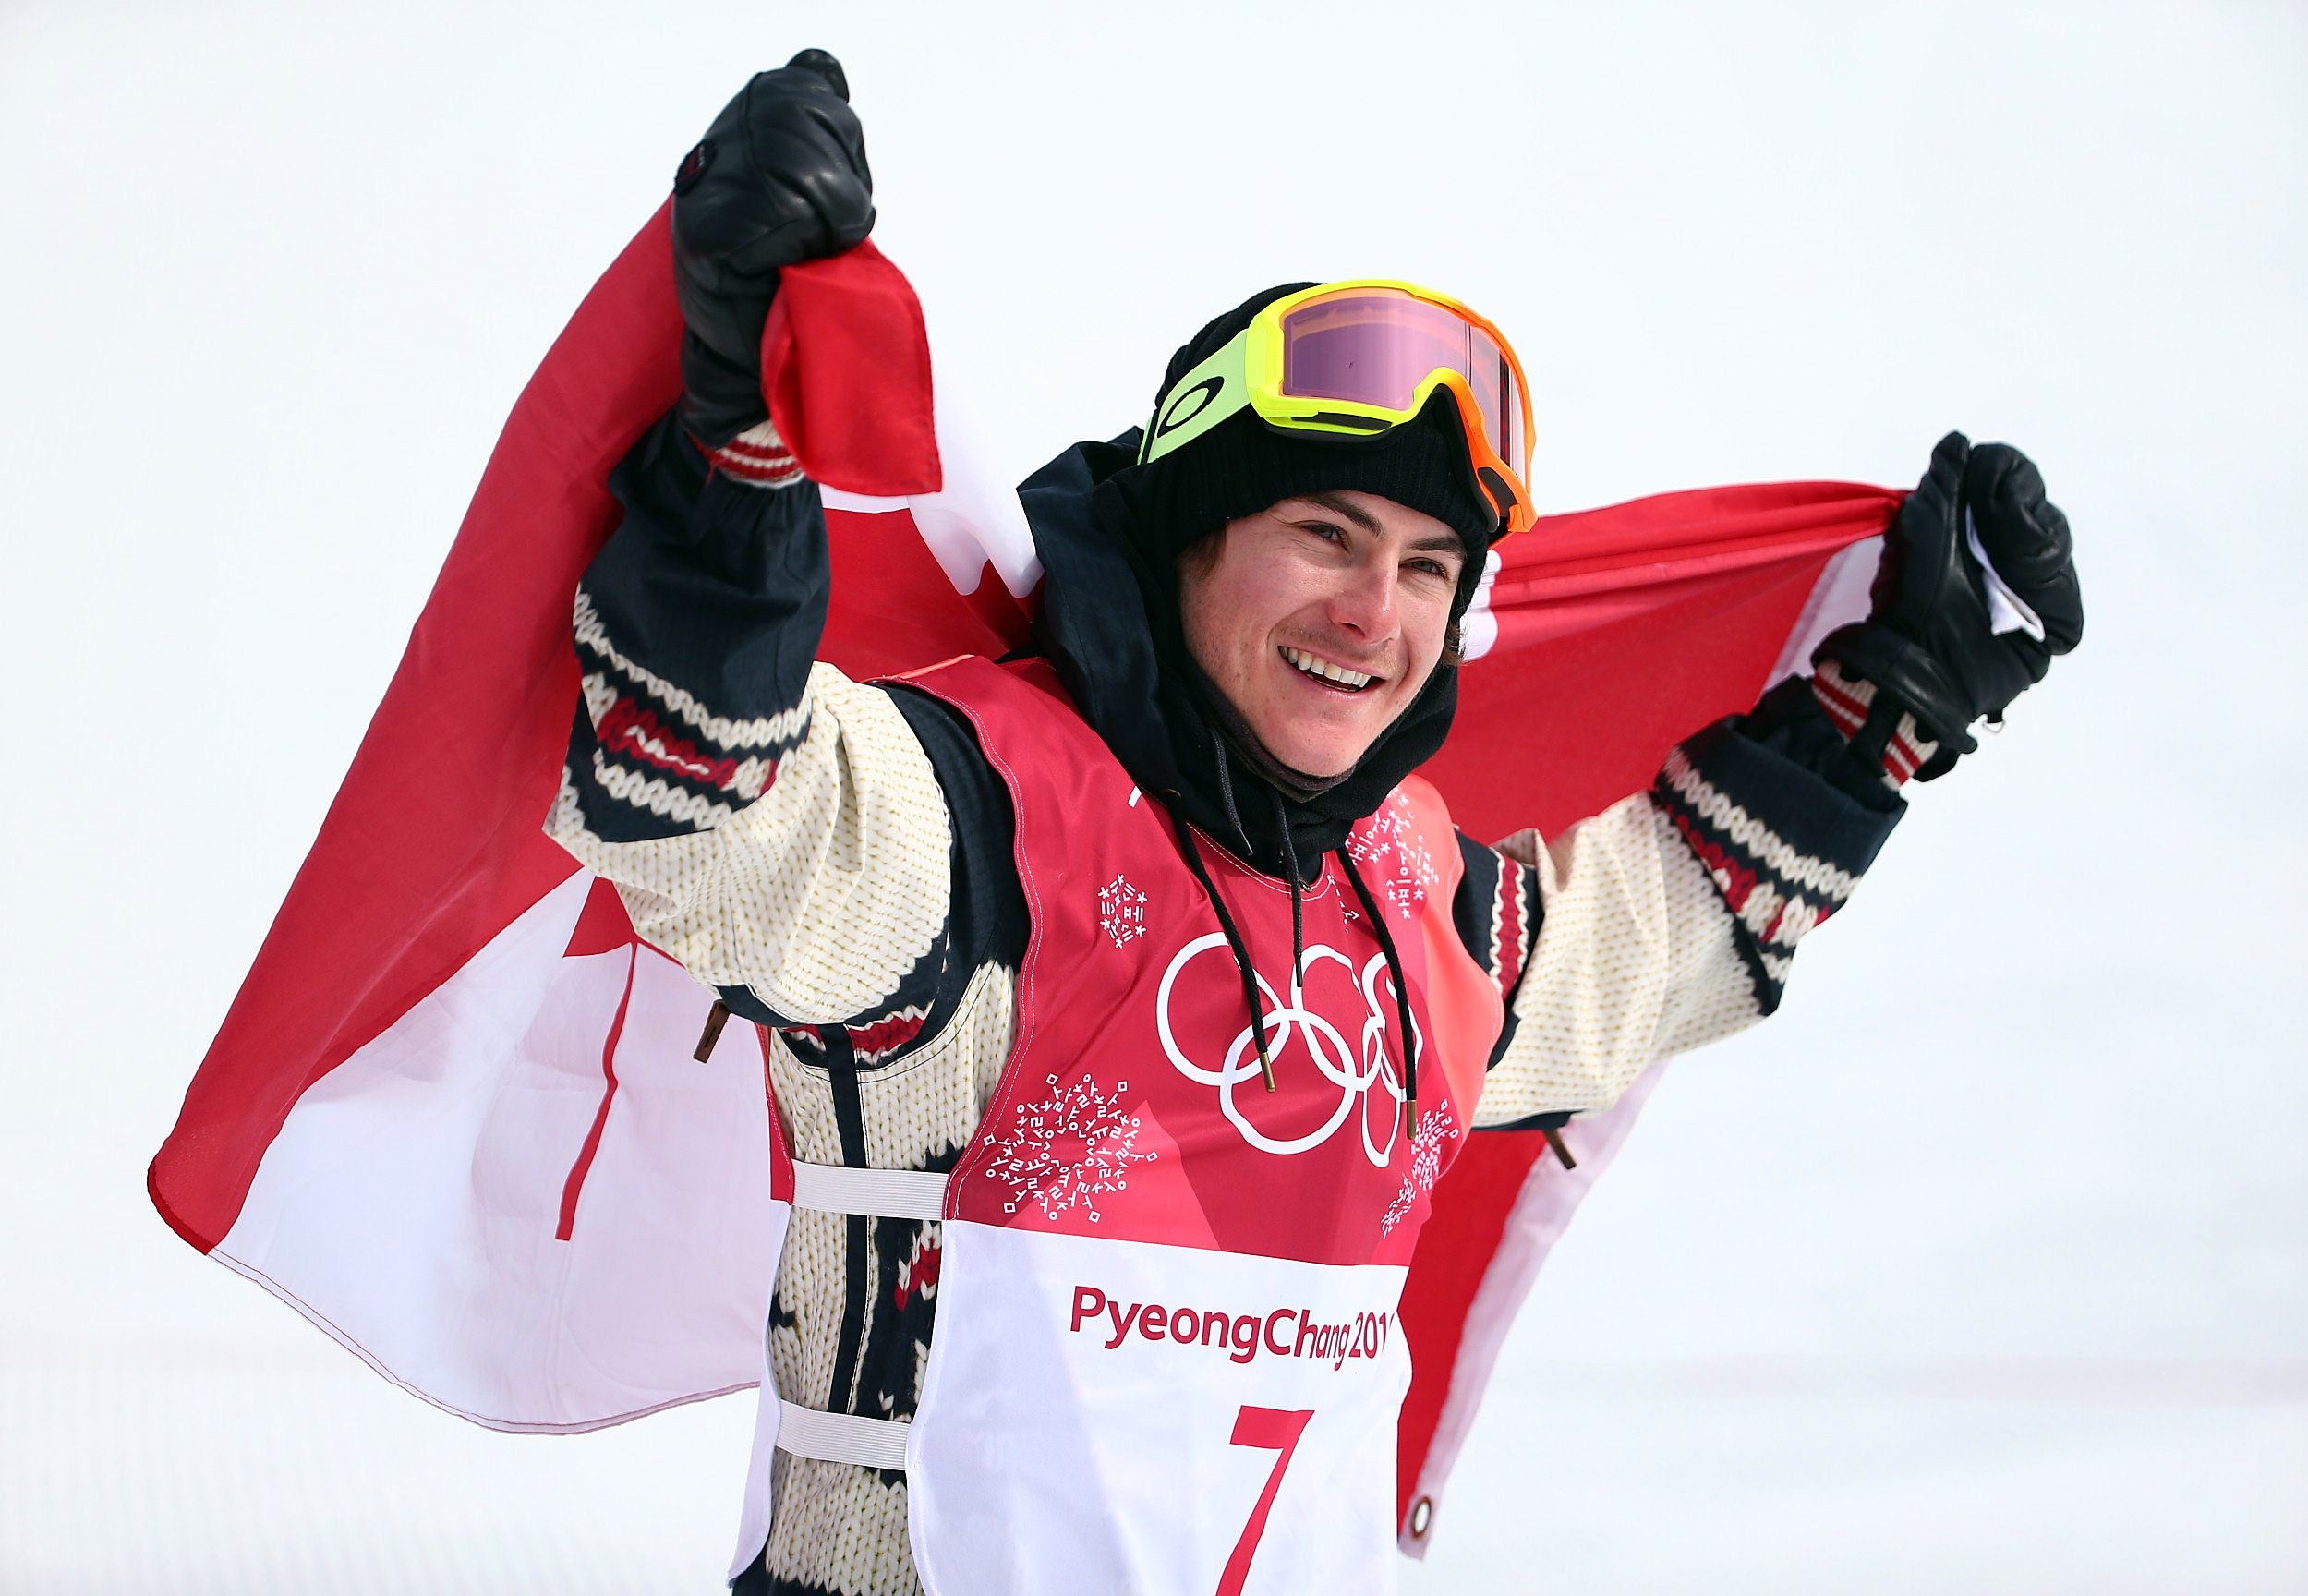 Le planchiste Sébastien Toutant d'Équipe Canada célèbre sa médaille d'or remportée à l'épreuve big air des Jeux olympiques de PyeongChang, en Corée du Sud, le 24 février 2018. (Photo : Vaughn Ridley/COC)